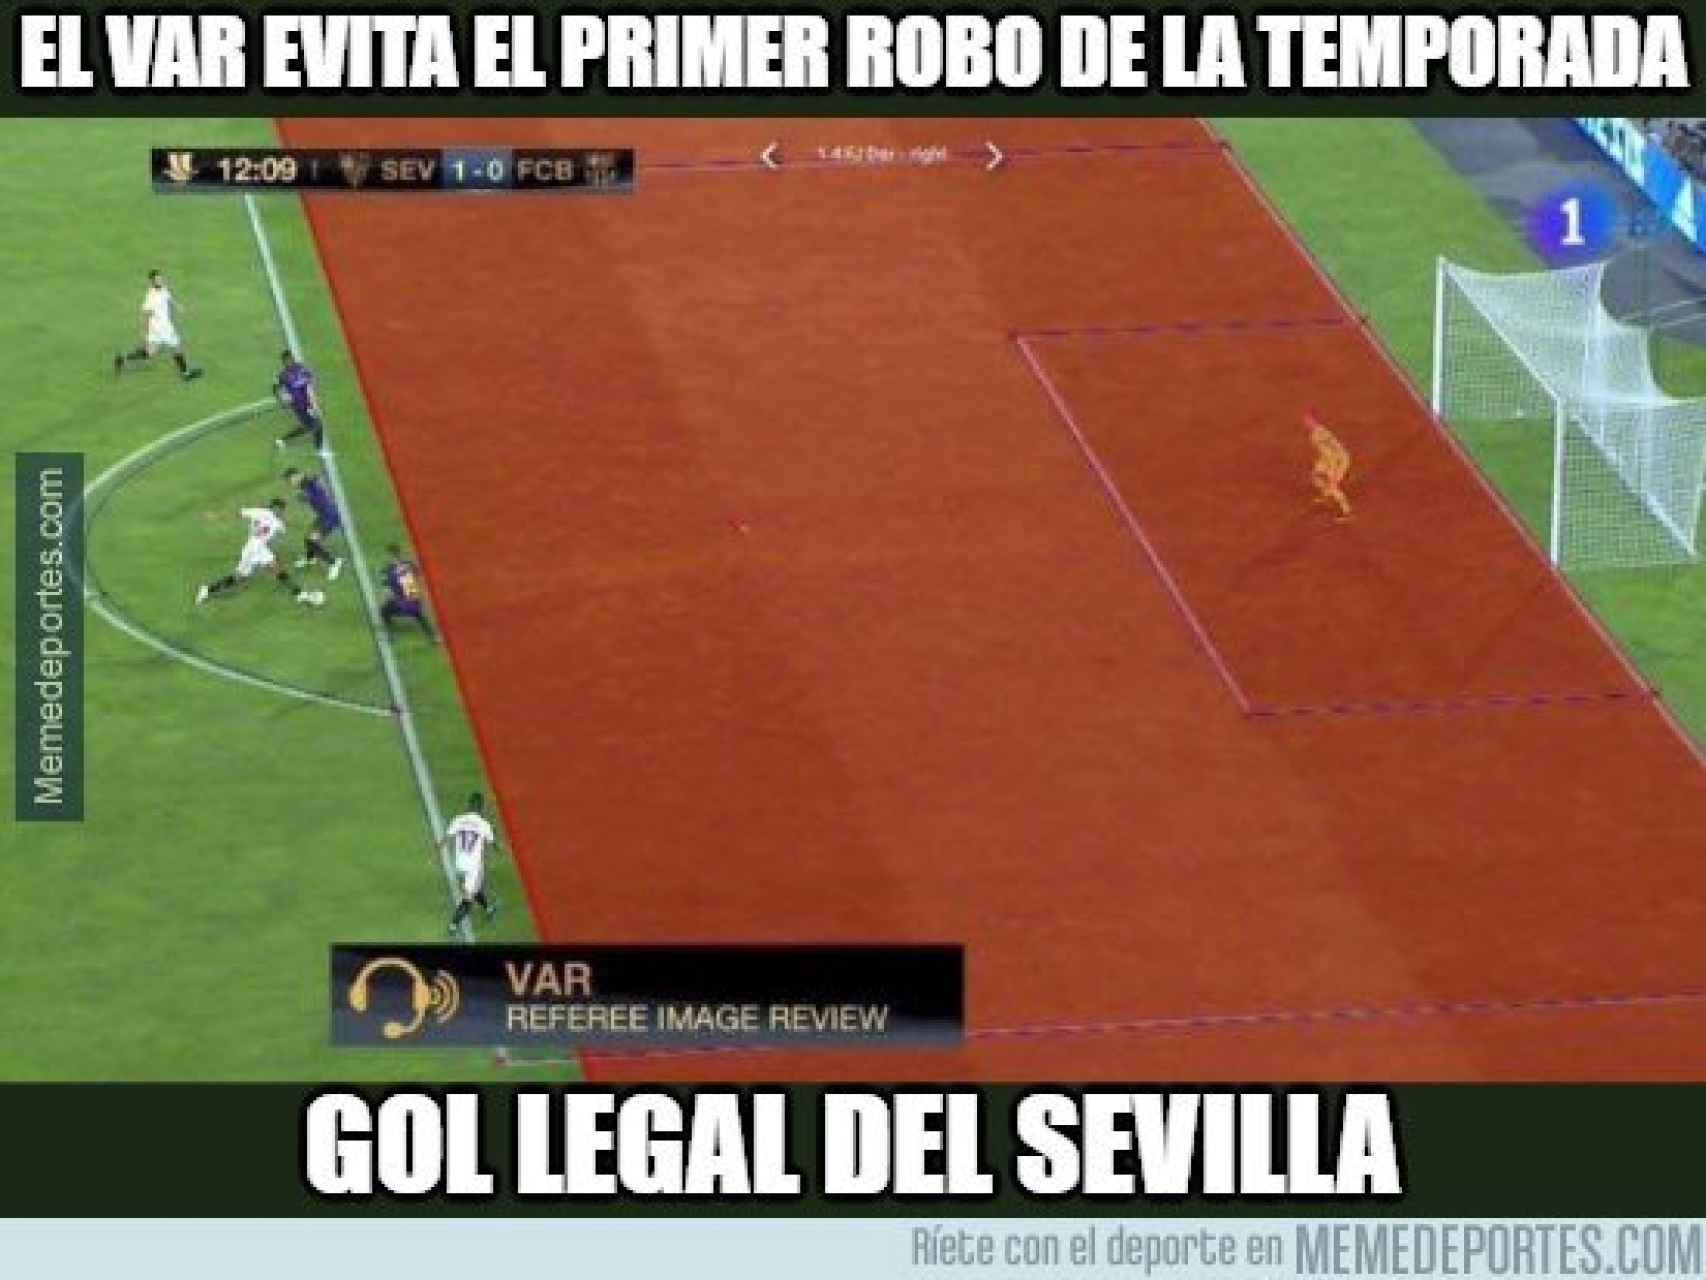 Meme sobre la Supercopa de España. Foto: memedeportes.com